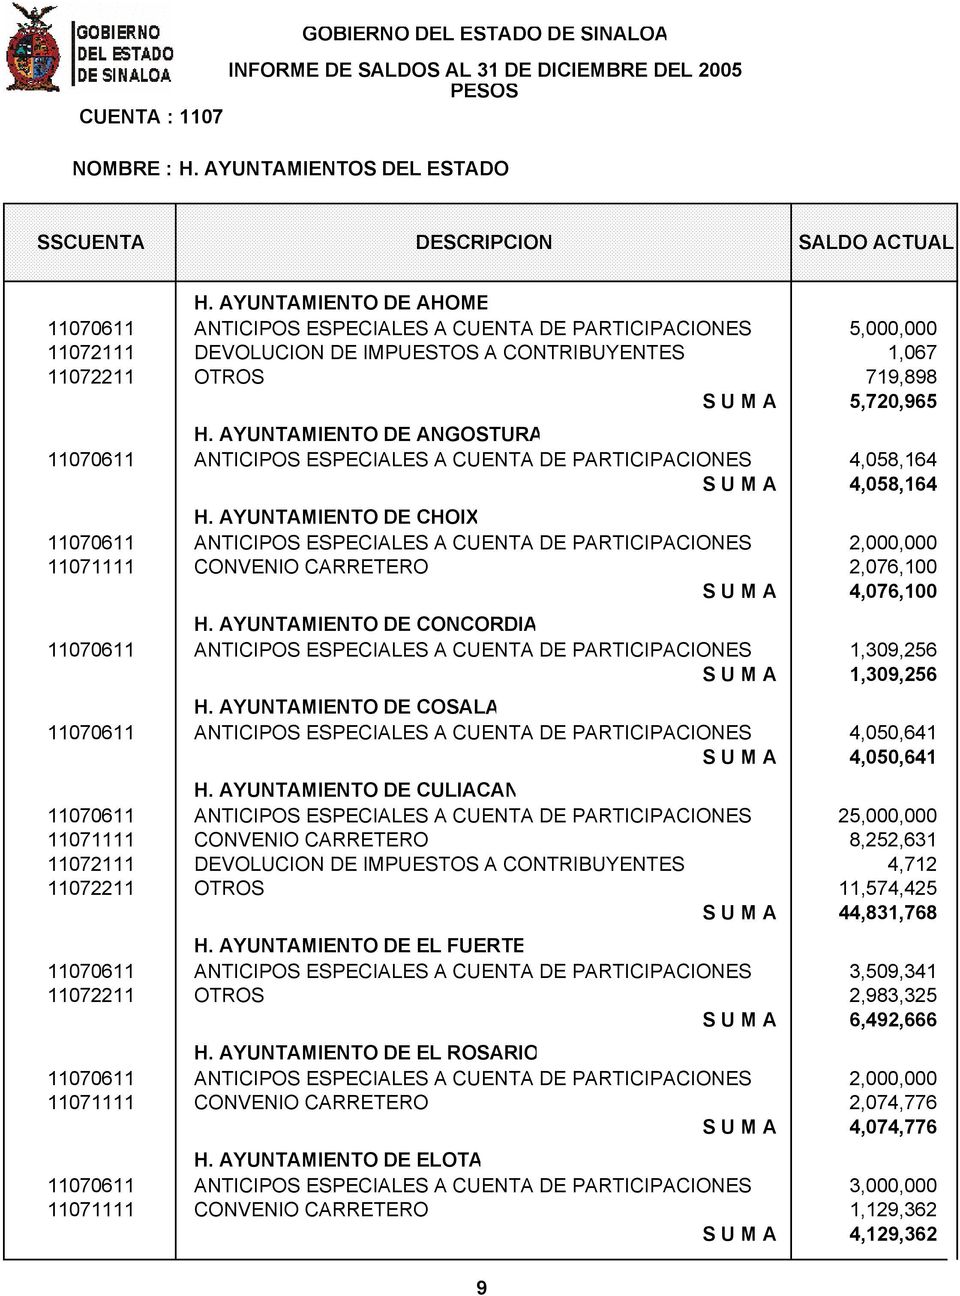 AYUNTAMIENTO DE ANGOSTURA 11070611 ANTICIPOS ESPECIALES A CUENTA DE PARTICIPACIONES 4,058,164 S U M A 4,058,164 H.